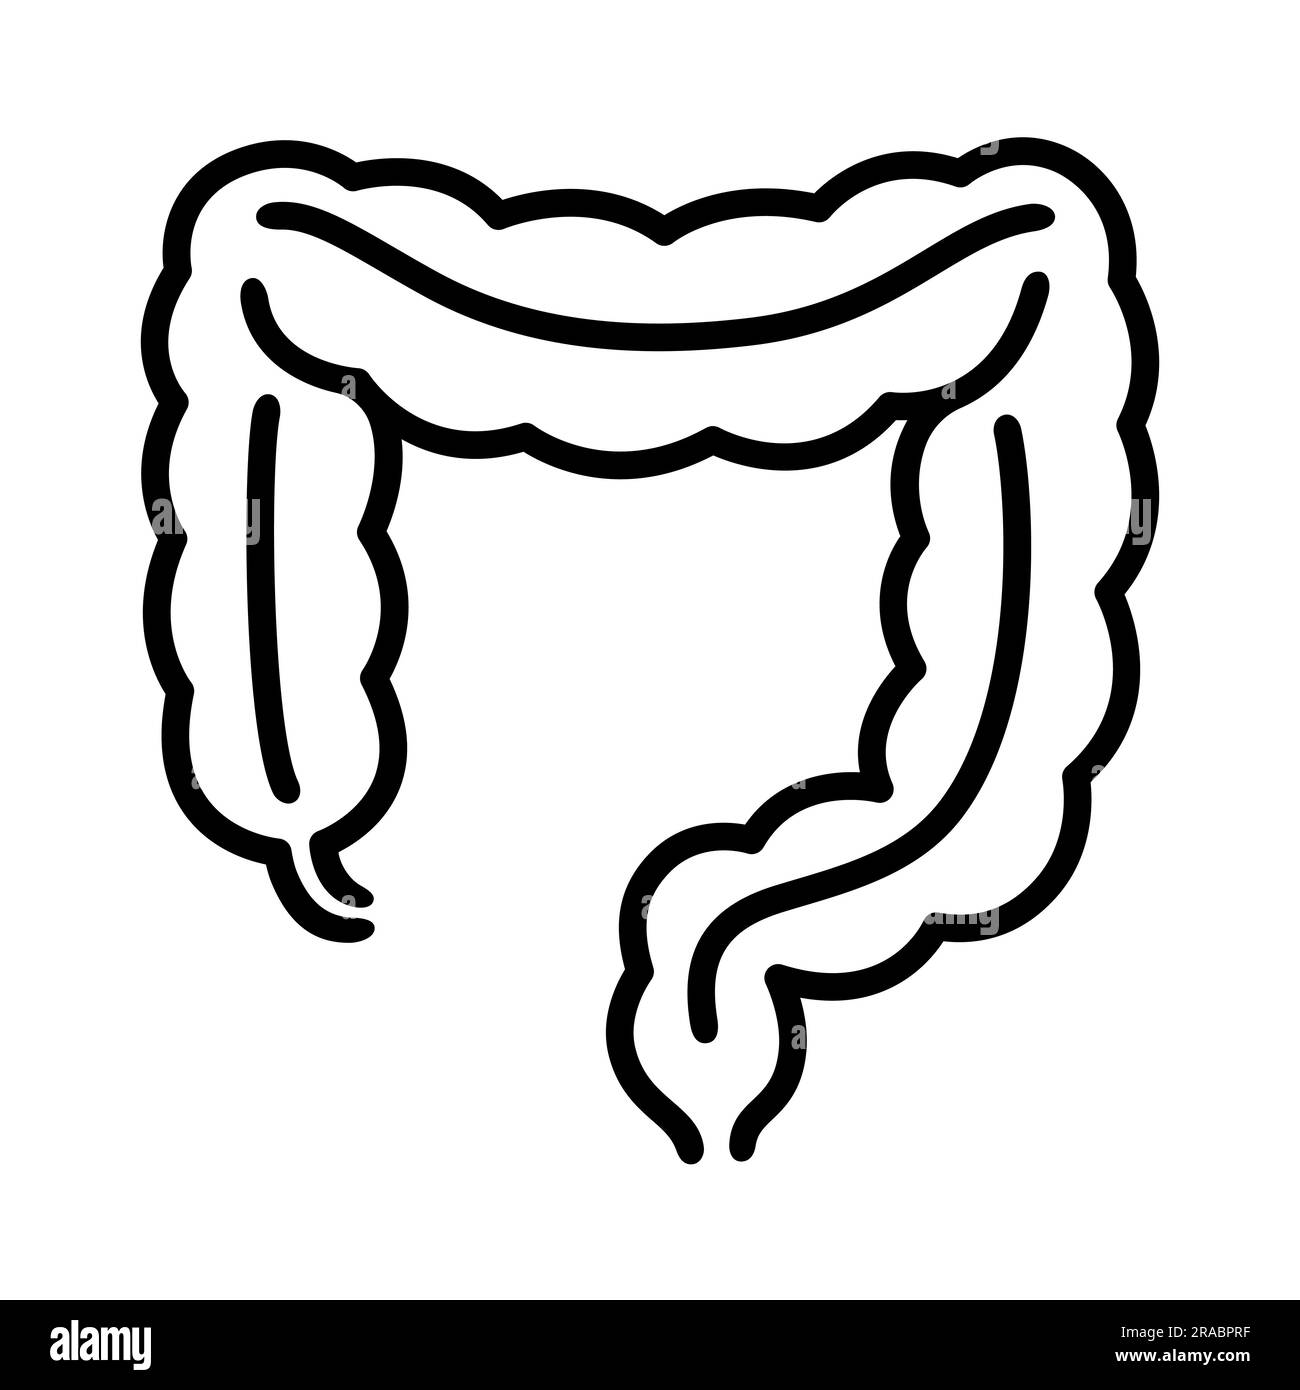 Icona della linea del colon umano. Intestino crasso, organo del tratto digestivo, semplice disegno in bianco e nero. Illustrazione vettoriale. Illustrazione Vettoriale